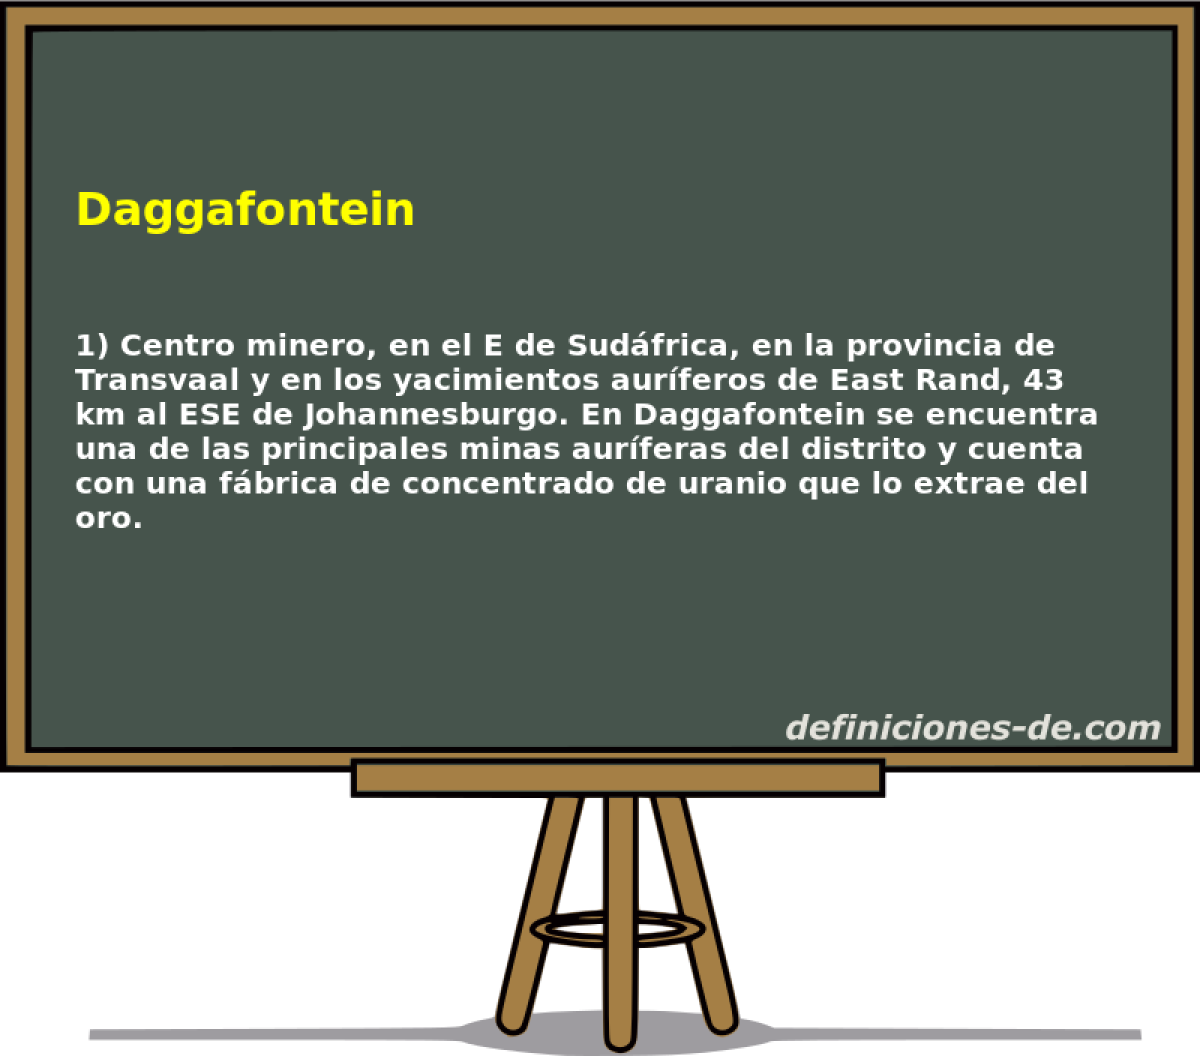 Daggafontein 